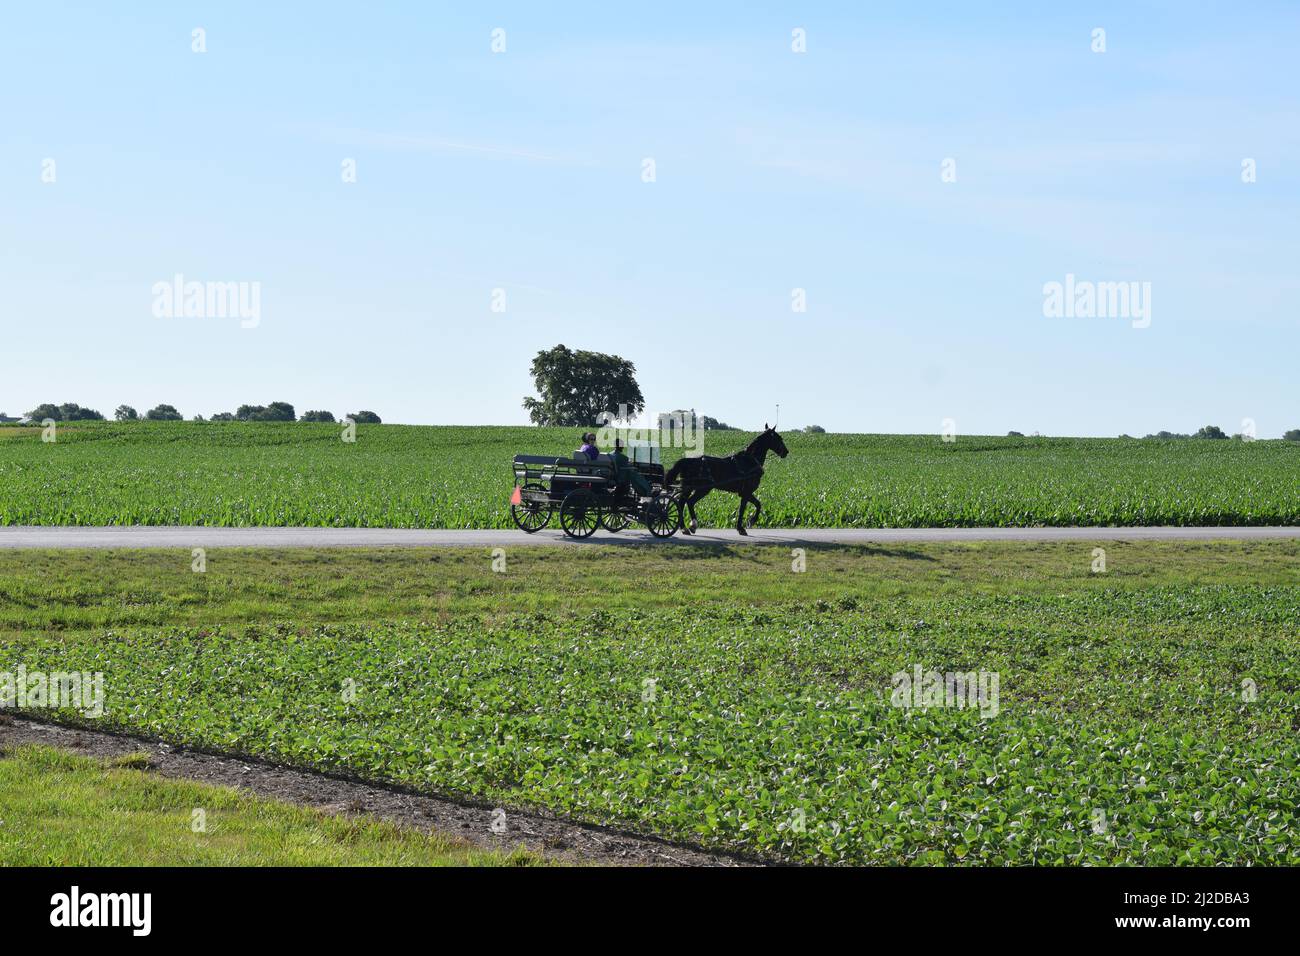 Eine Amish-Frau im Buggy starrt einen Fotografen an, der ihr Foto in der Nähe von Arthur, Illinois, macht Stockfoto